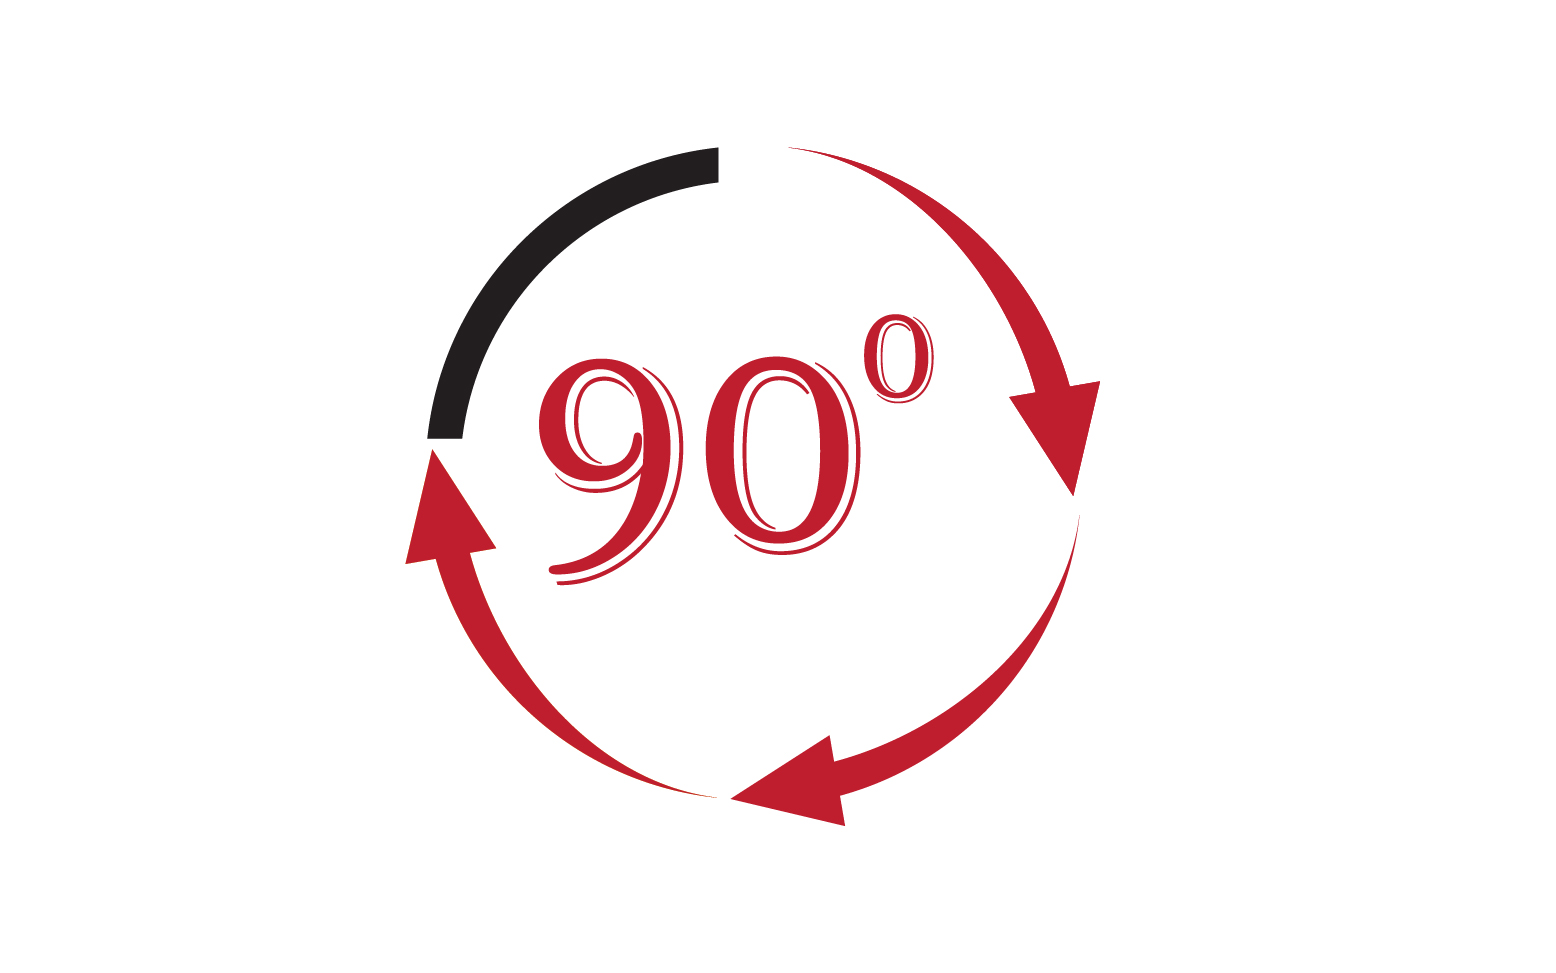 90 degree angle rotation icon symbol logo v15